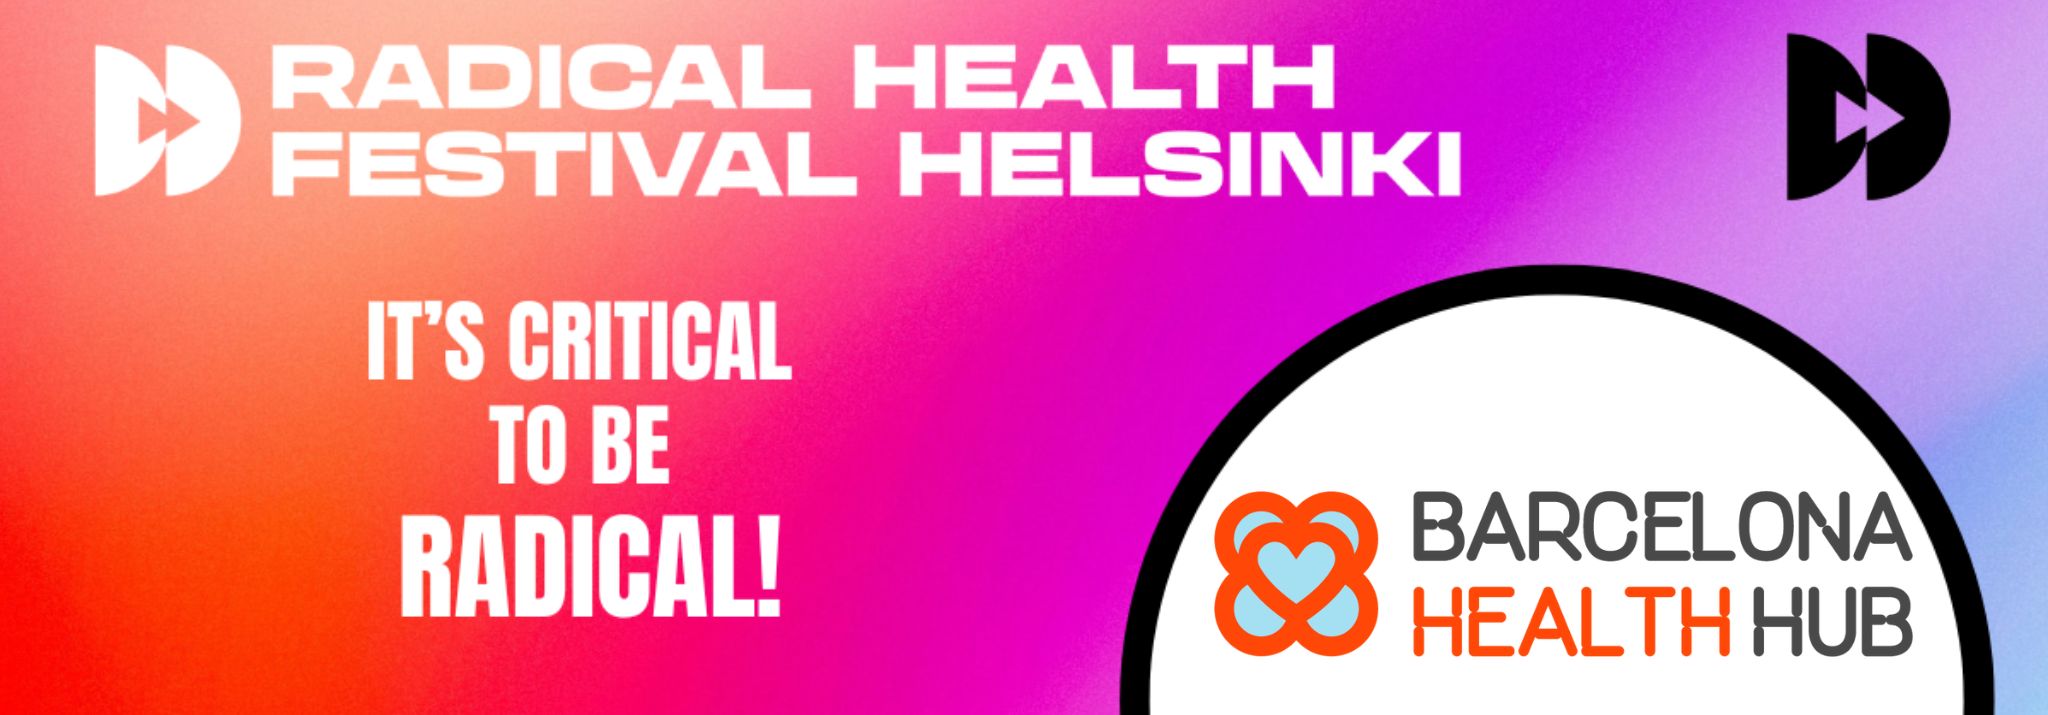 Don't miss the Radical Health Festival Helsinki